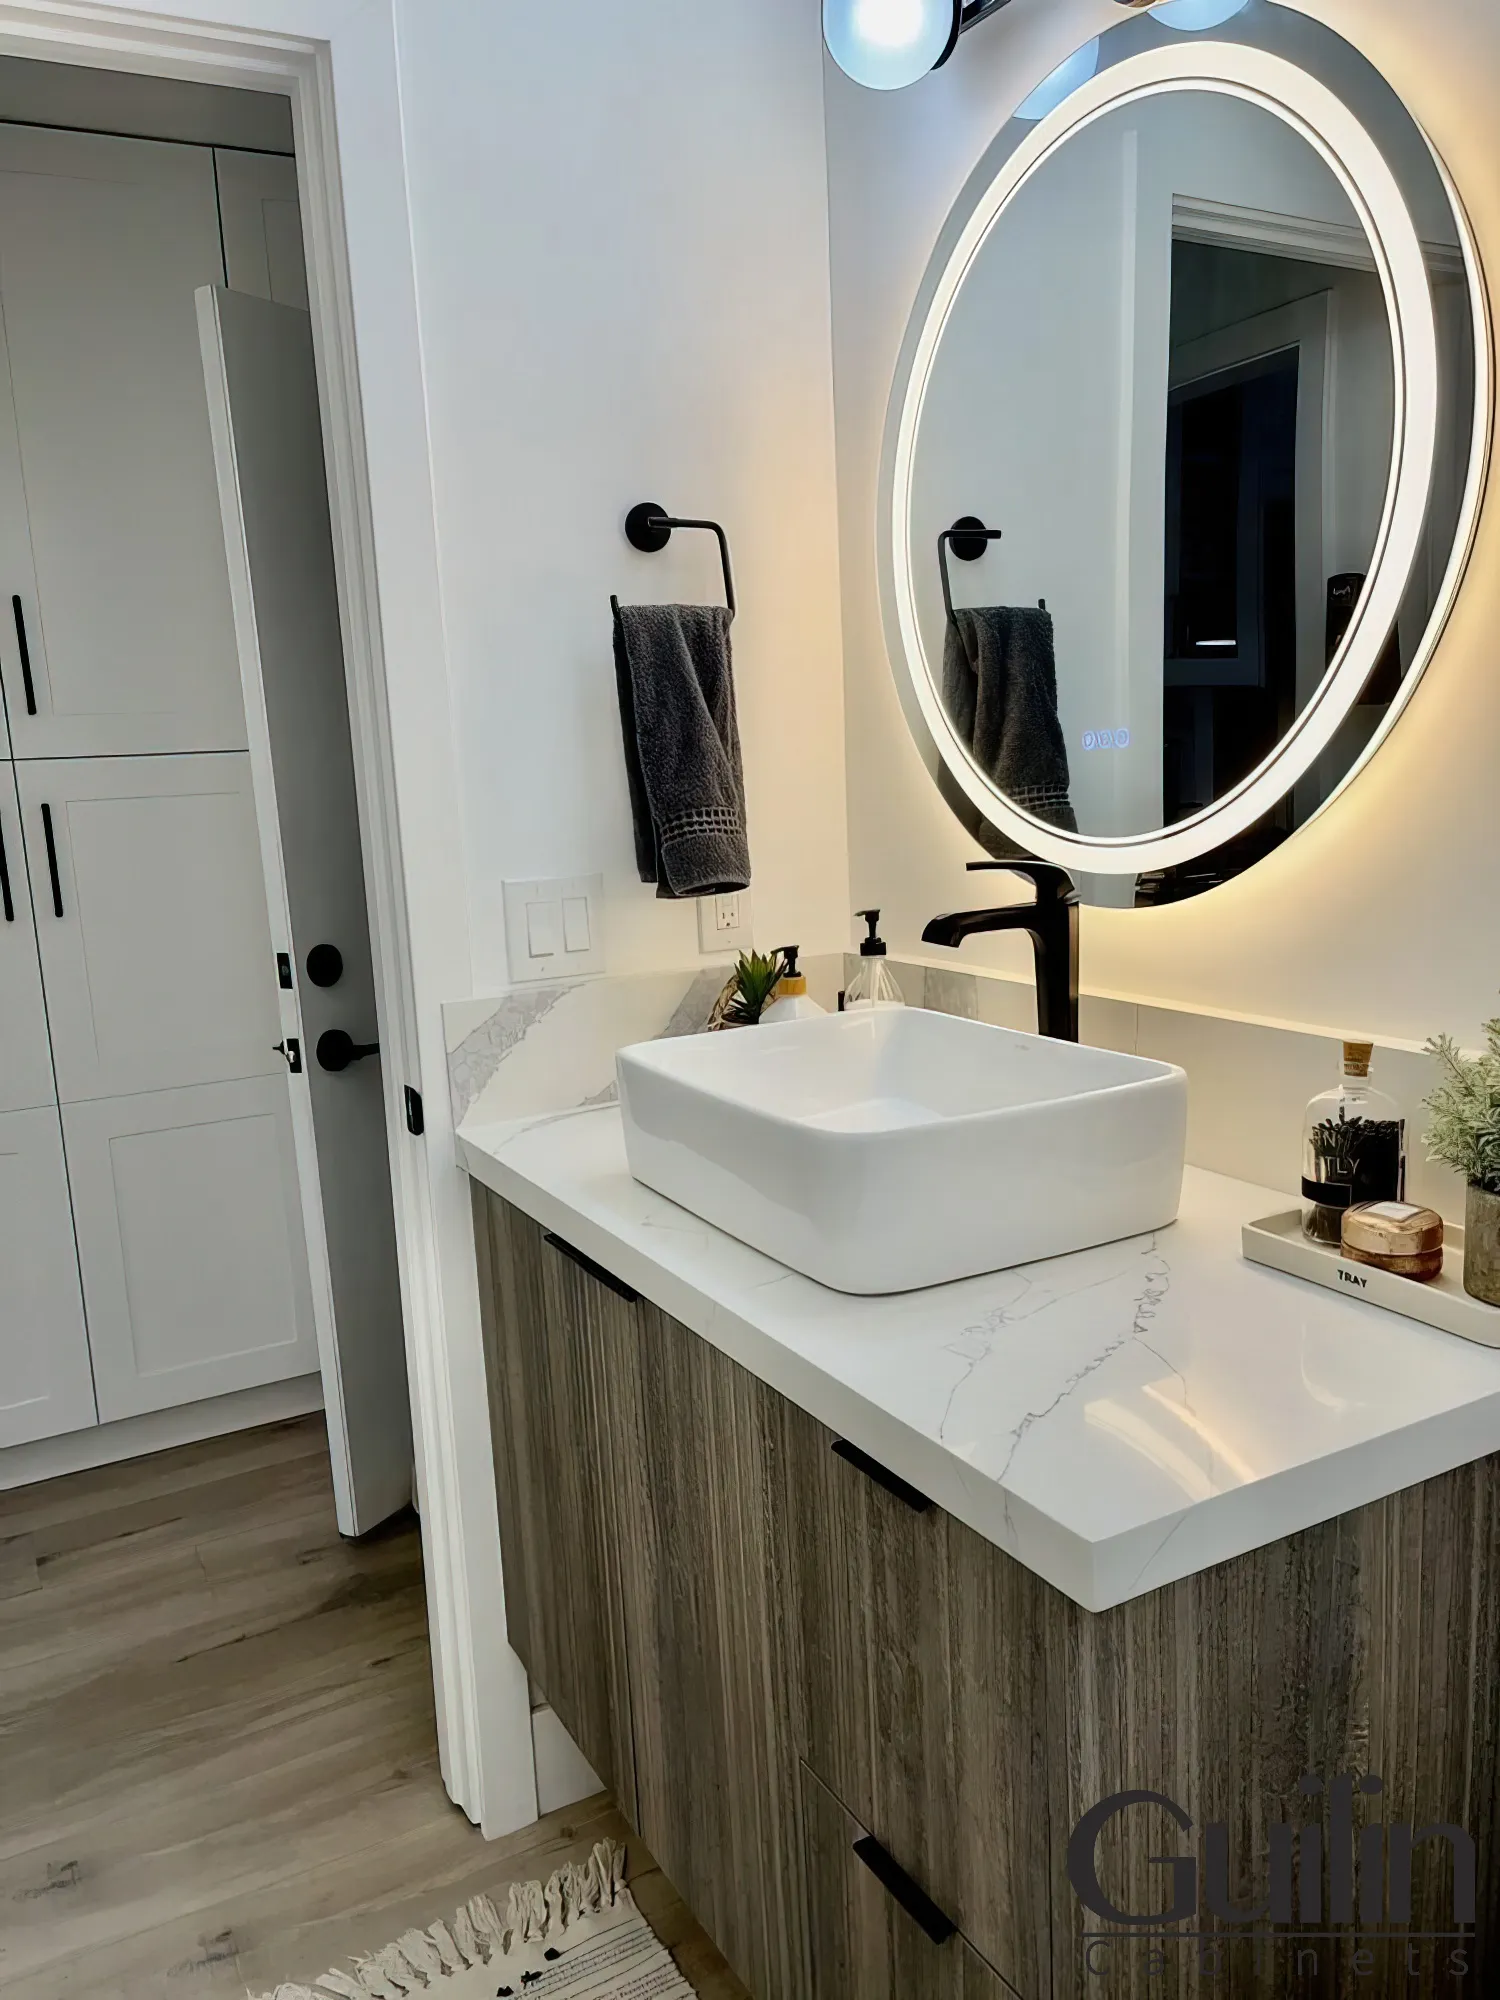 Refacing bathroom vanity cabinets with Wood Veneer - 